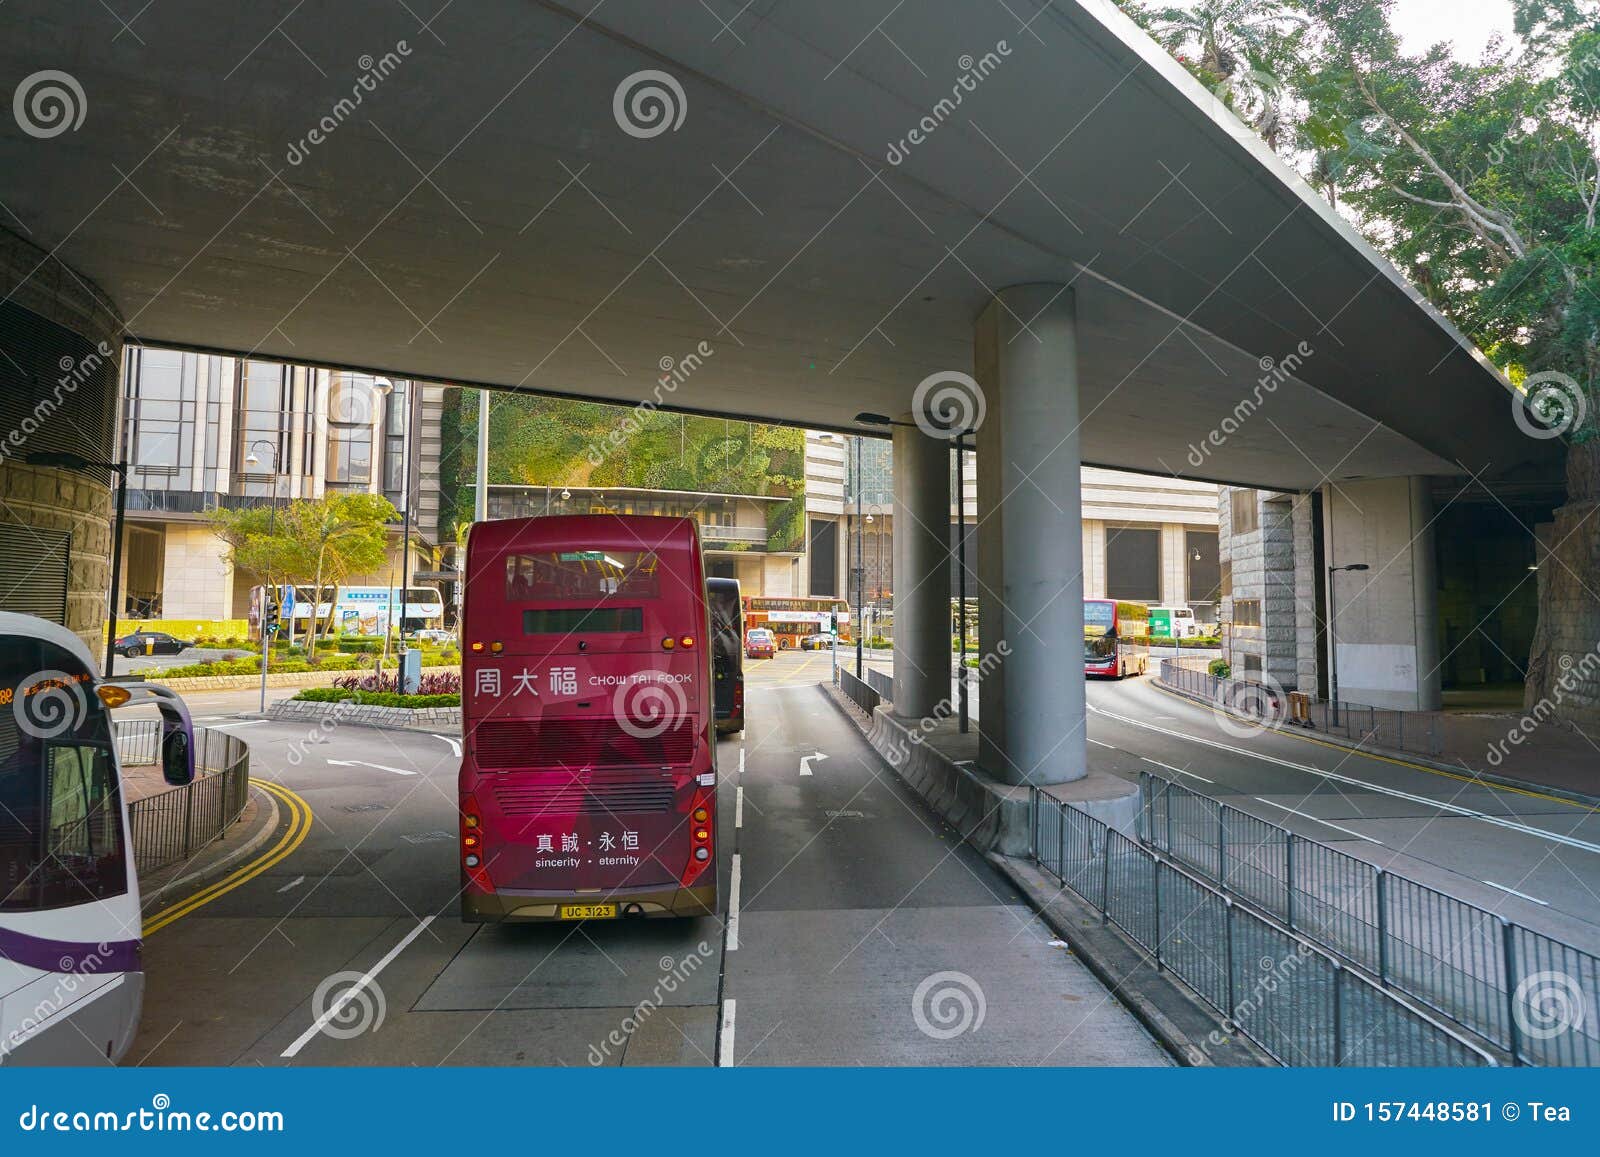 Hong Kong Editorial Photo Image Of City Transportation 157448581